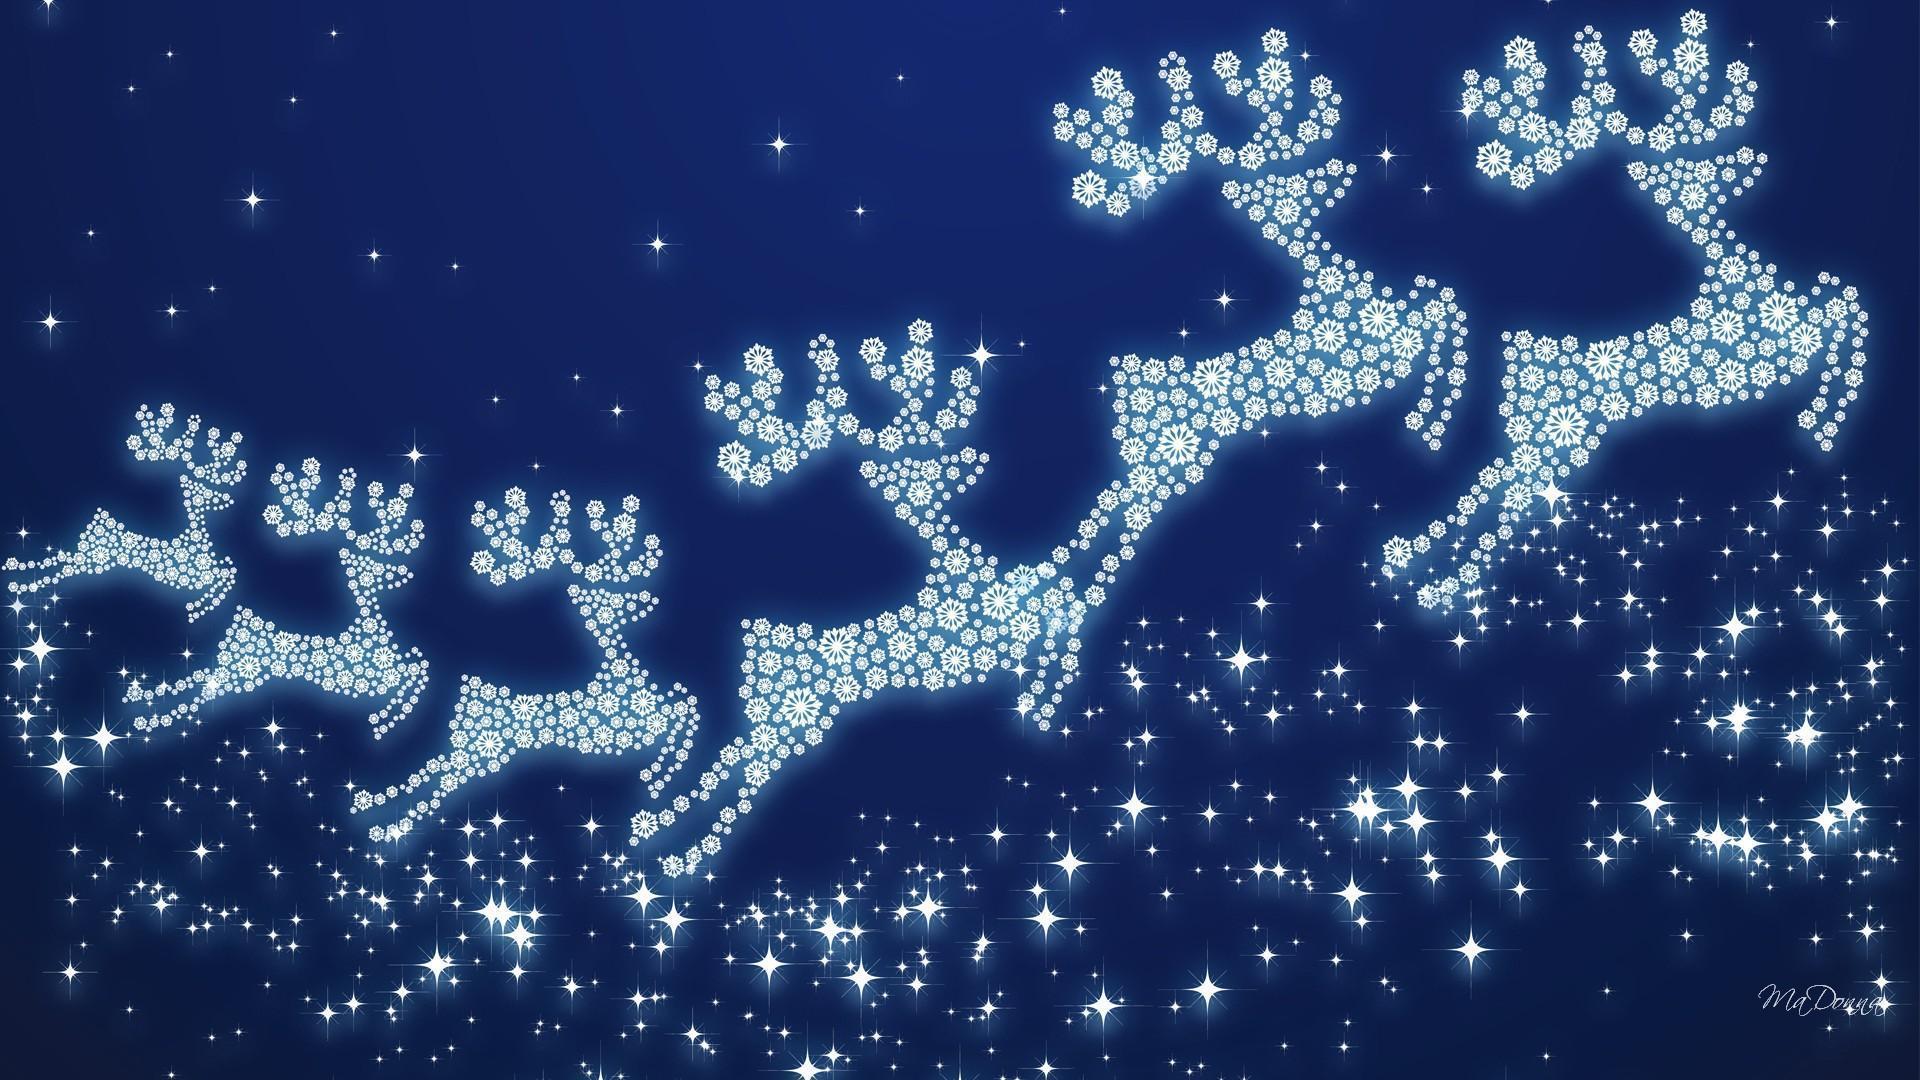 Reindeer HD Desktop Wallpaper for Widescreen, High Definition